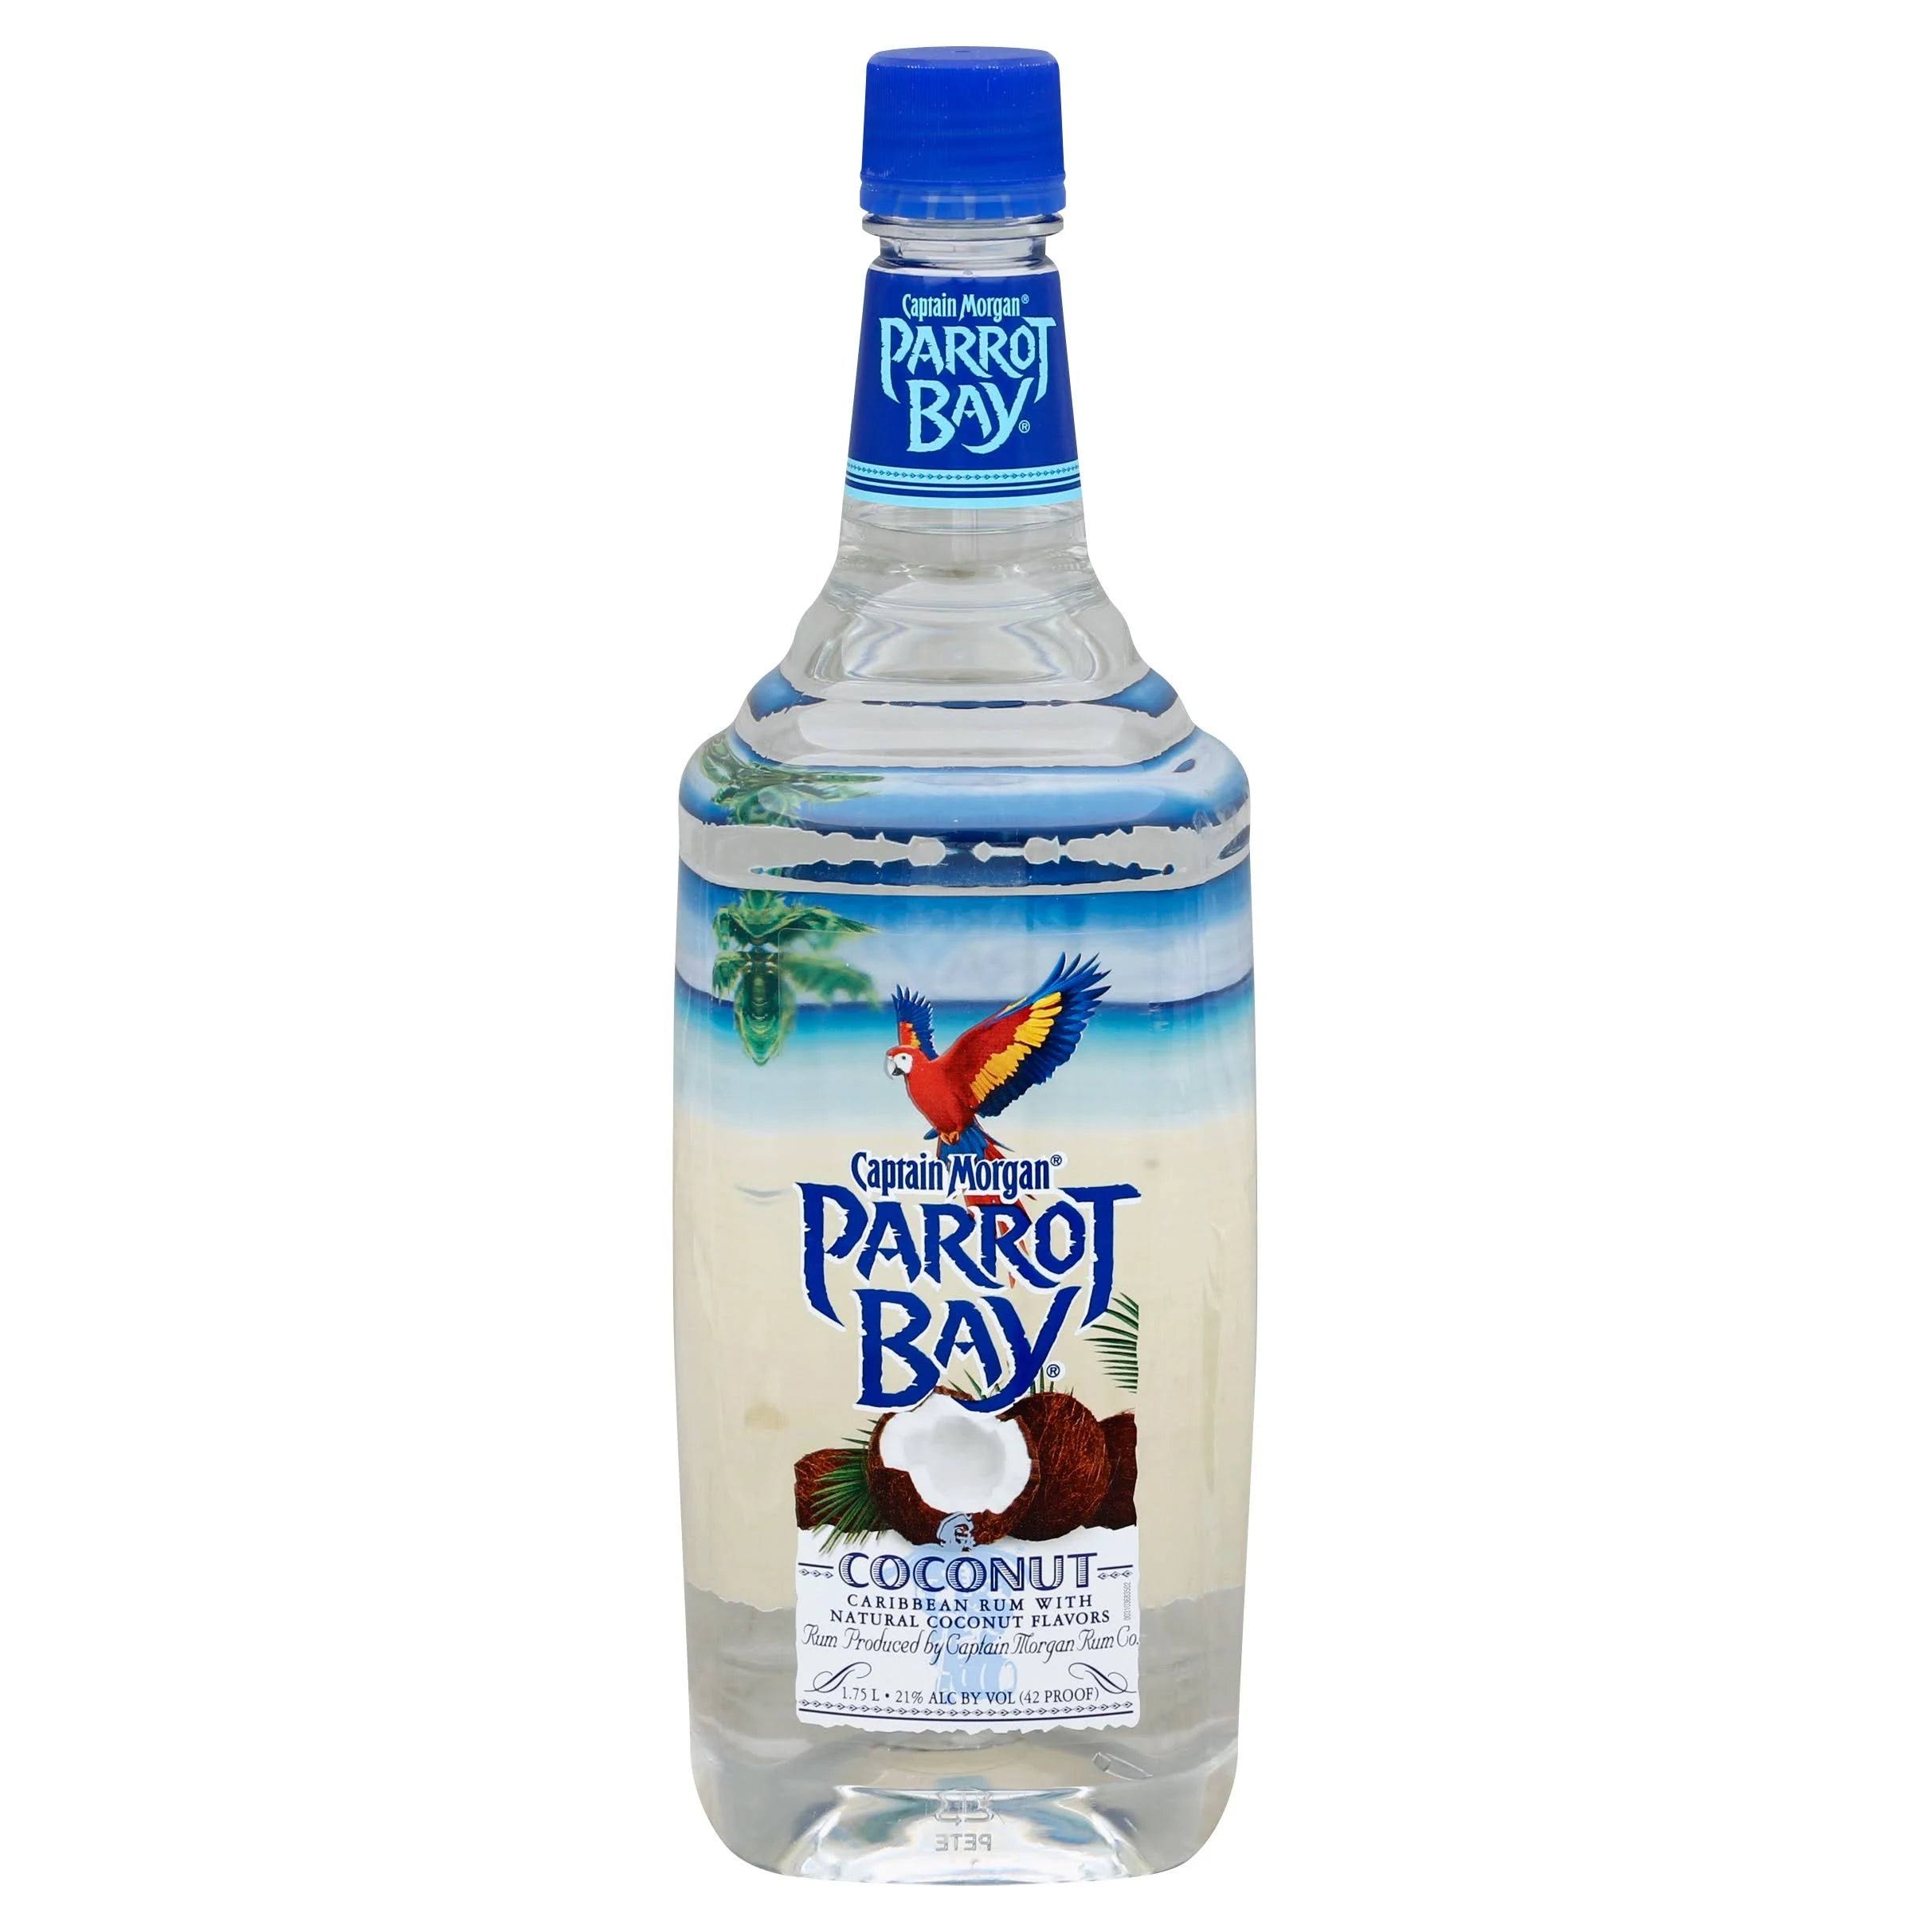 Parrot Bay - Coconut Rum (750ml)